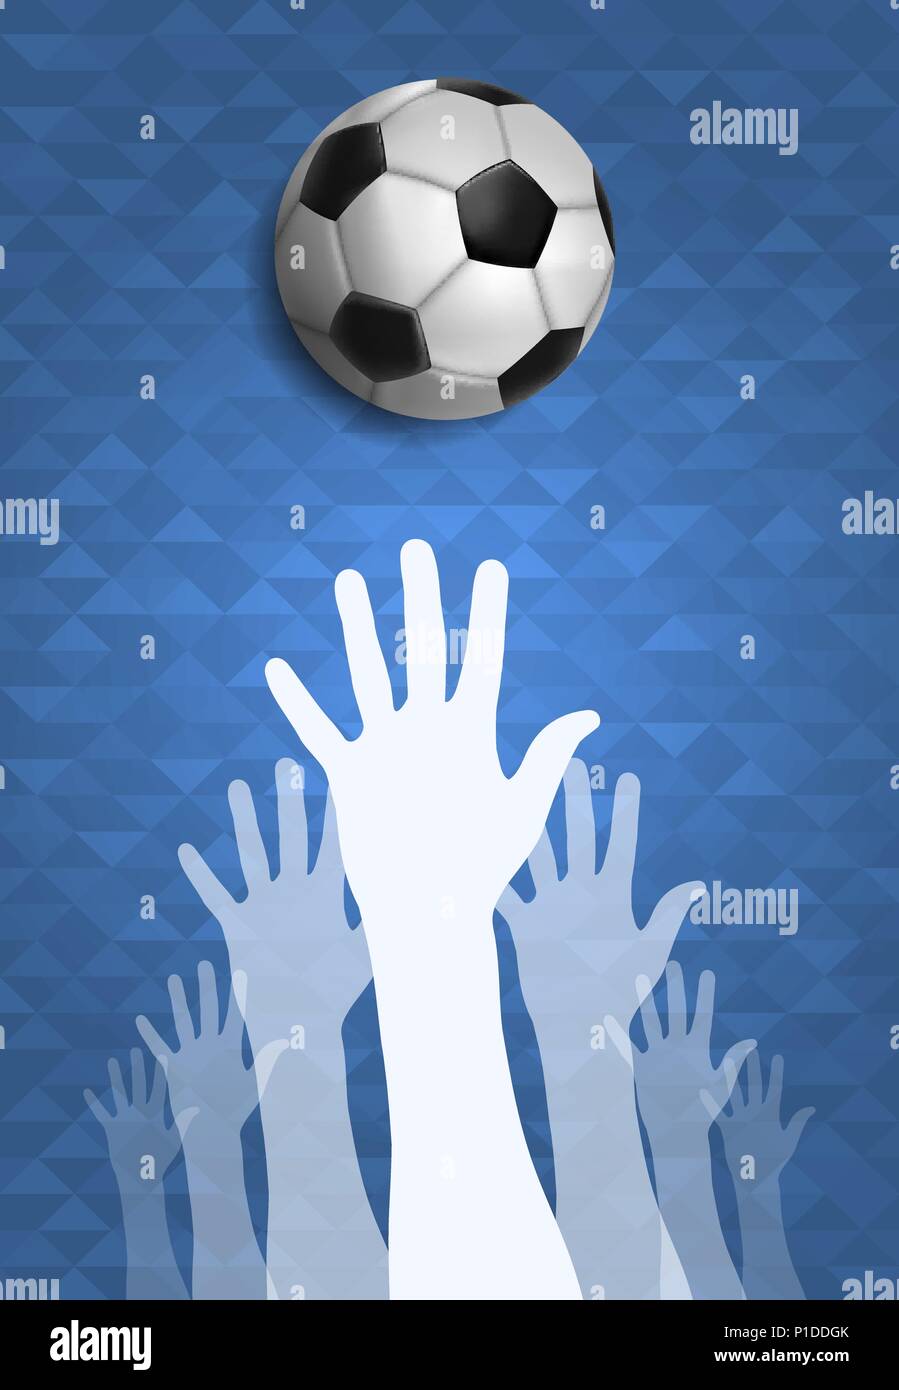 Fußball-Event Abbildung, sport spiel Hintergrund mit Menschen Hand und Fuß ball. United Gemeinschaft für Sport. EPS 10 Vektor. Stock Vektor